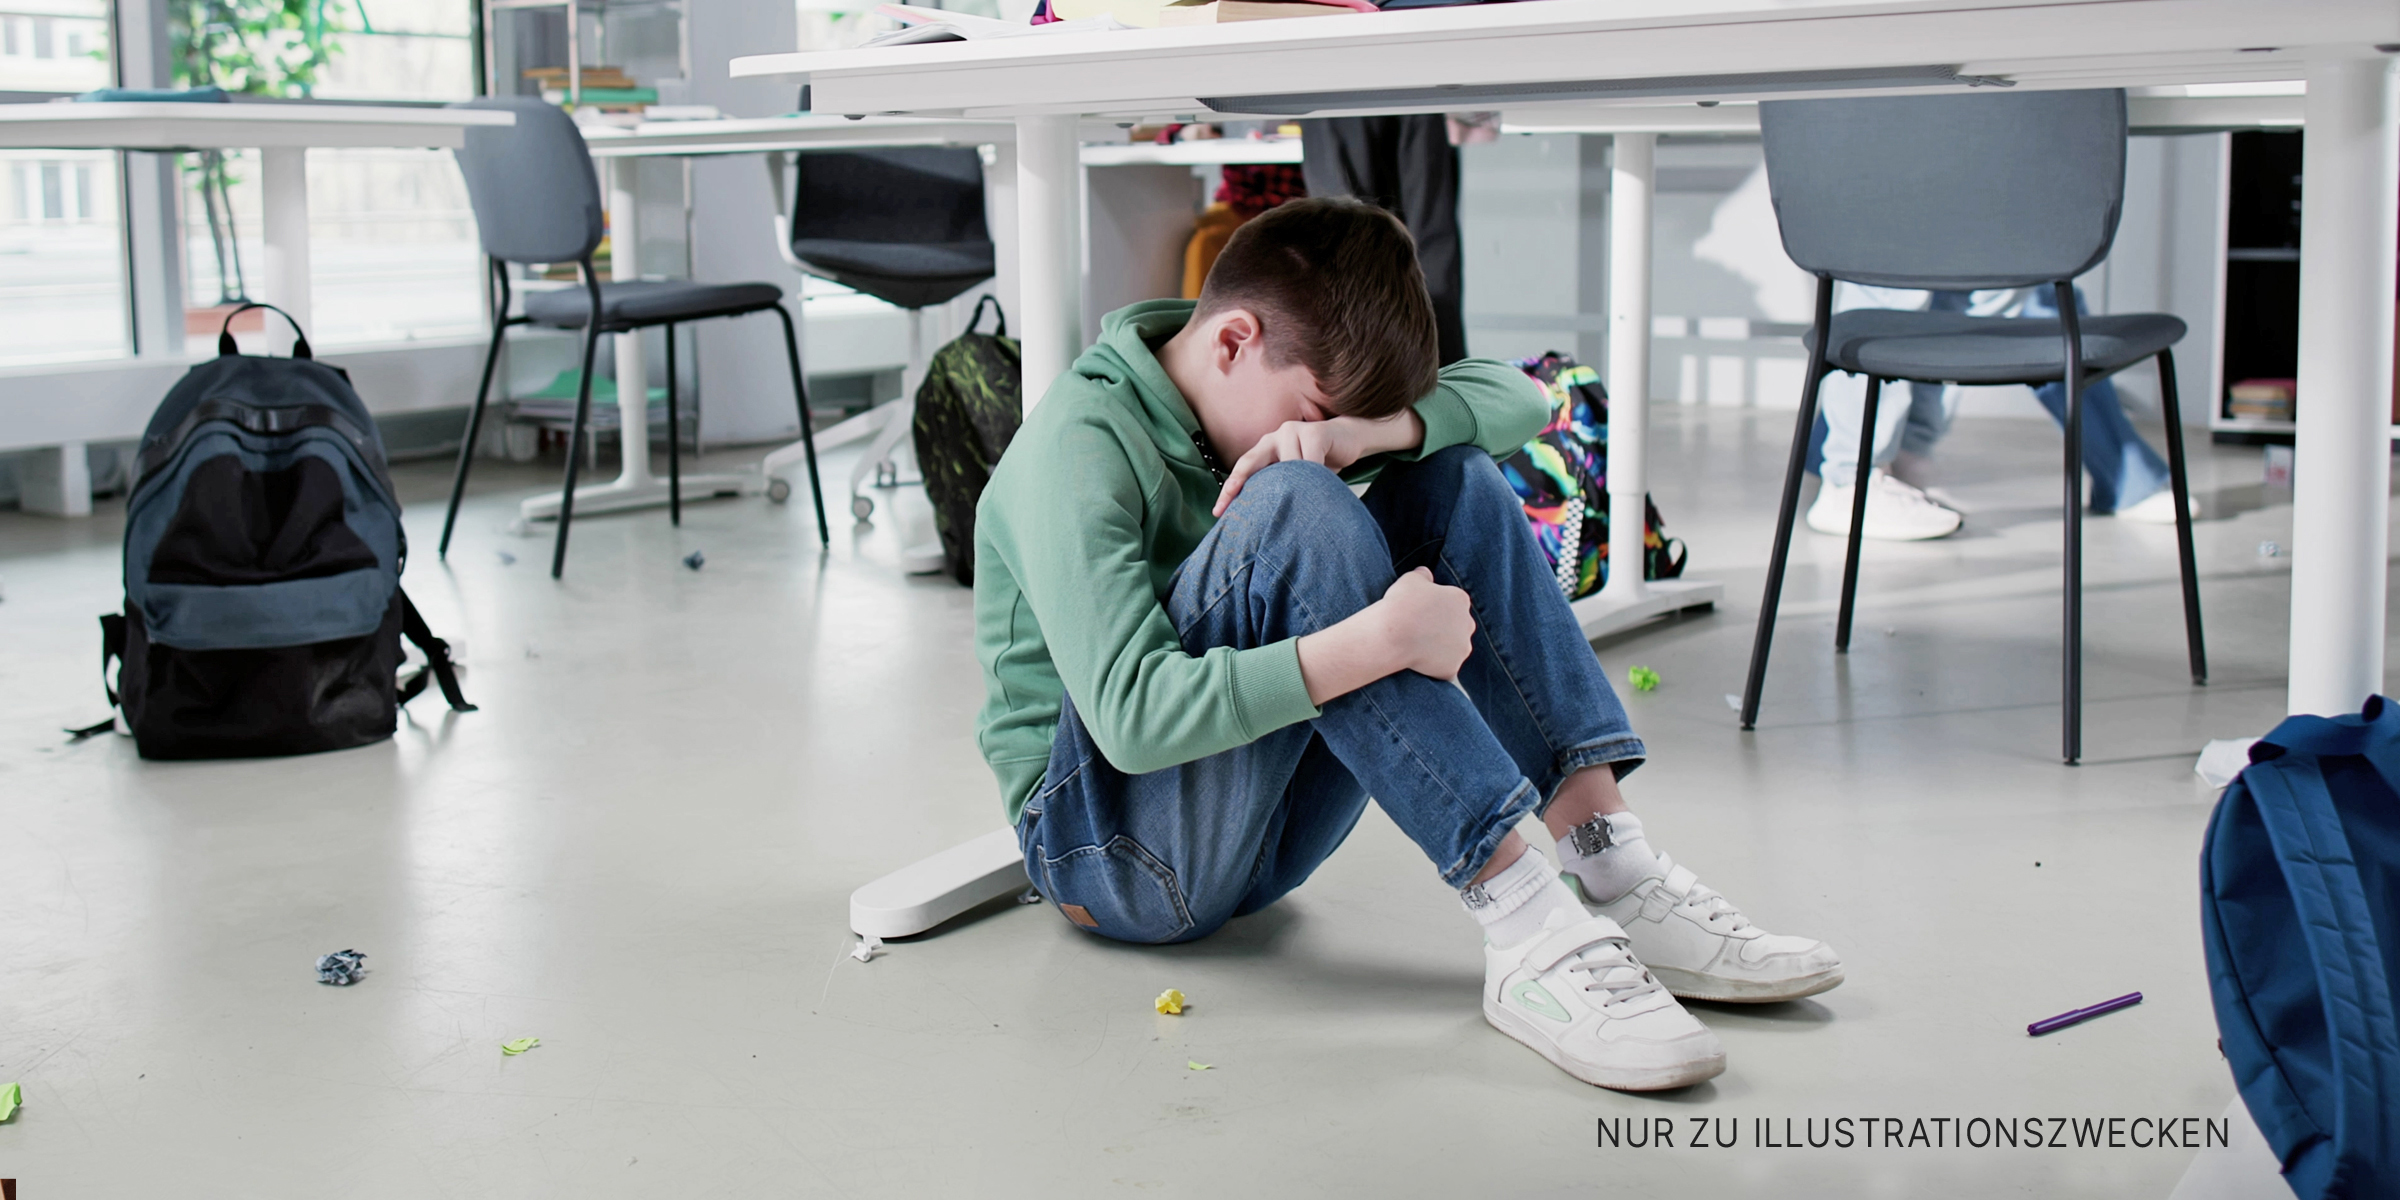 Junge umarmt seine Knie und weint. | Quelle: Shutterstock